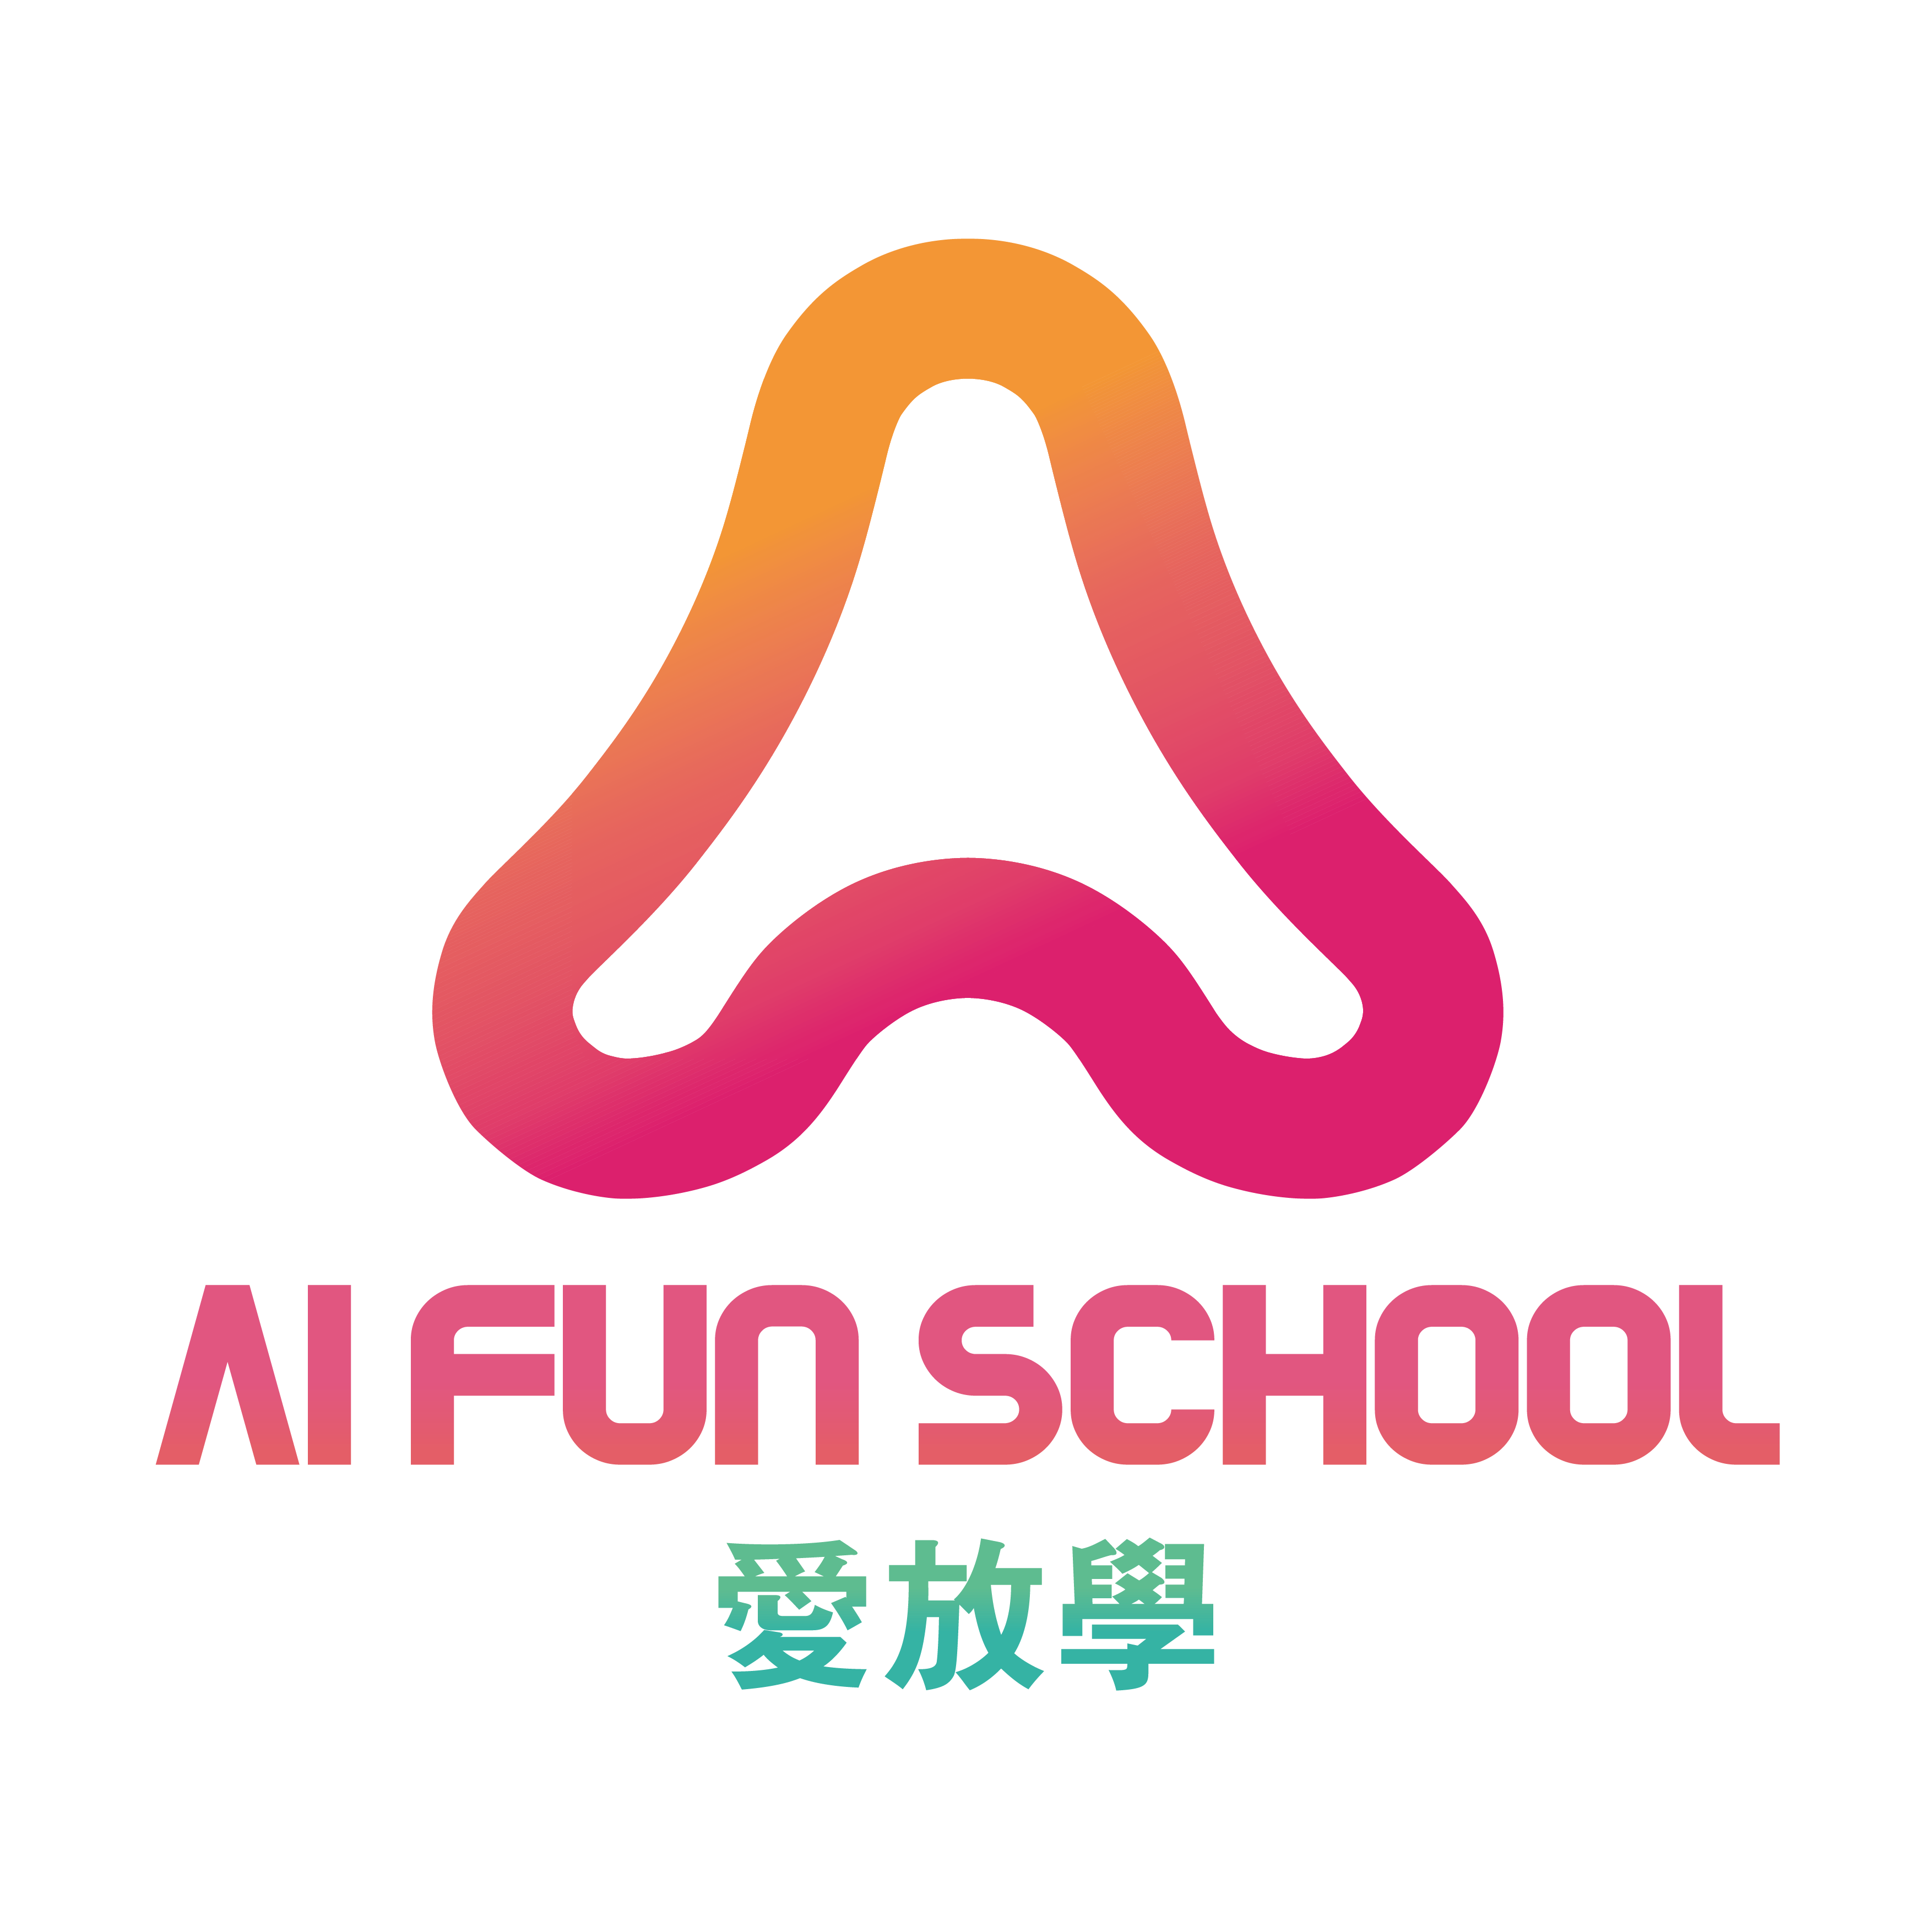 AI FUN SCHOOL